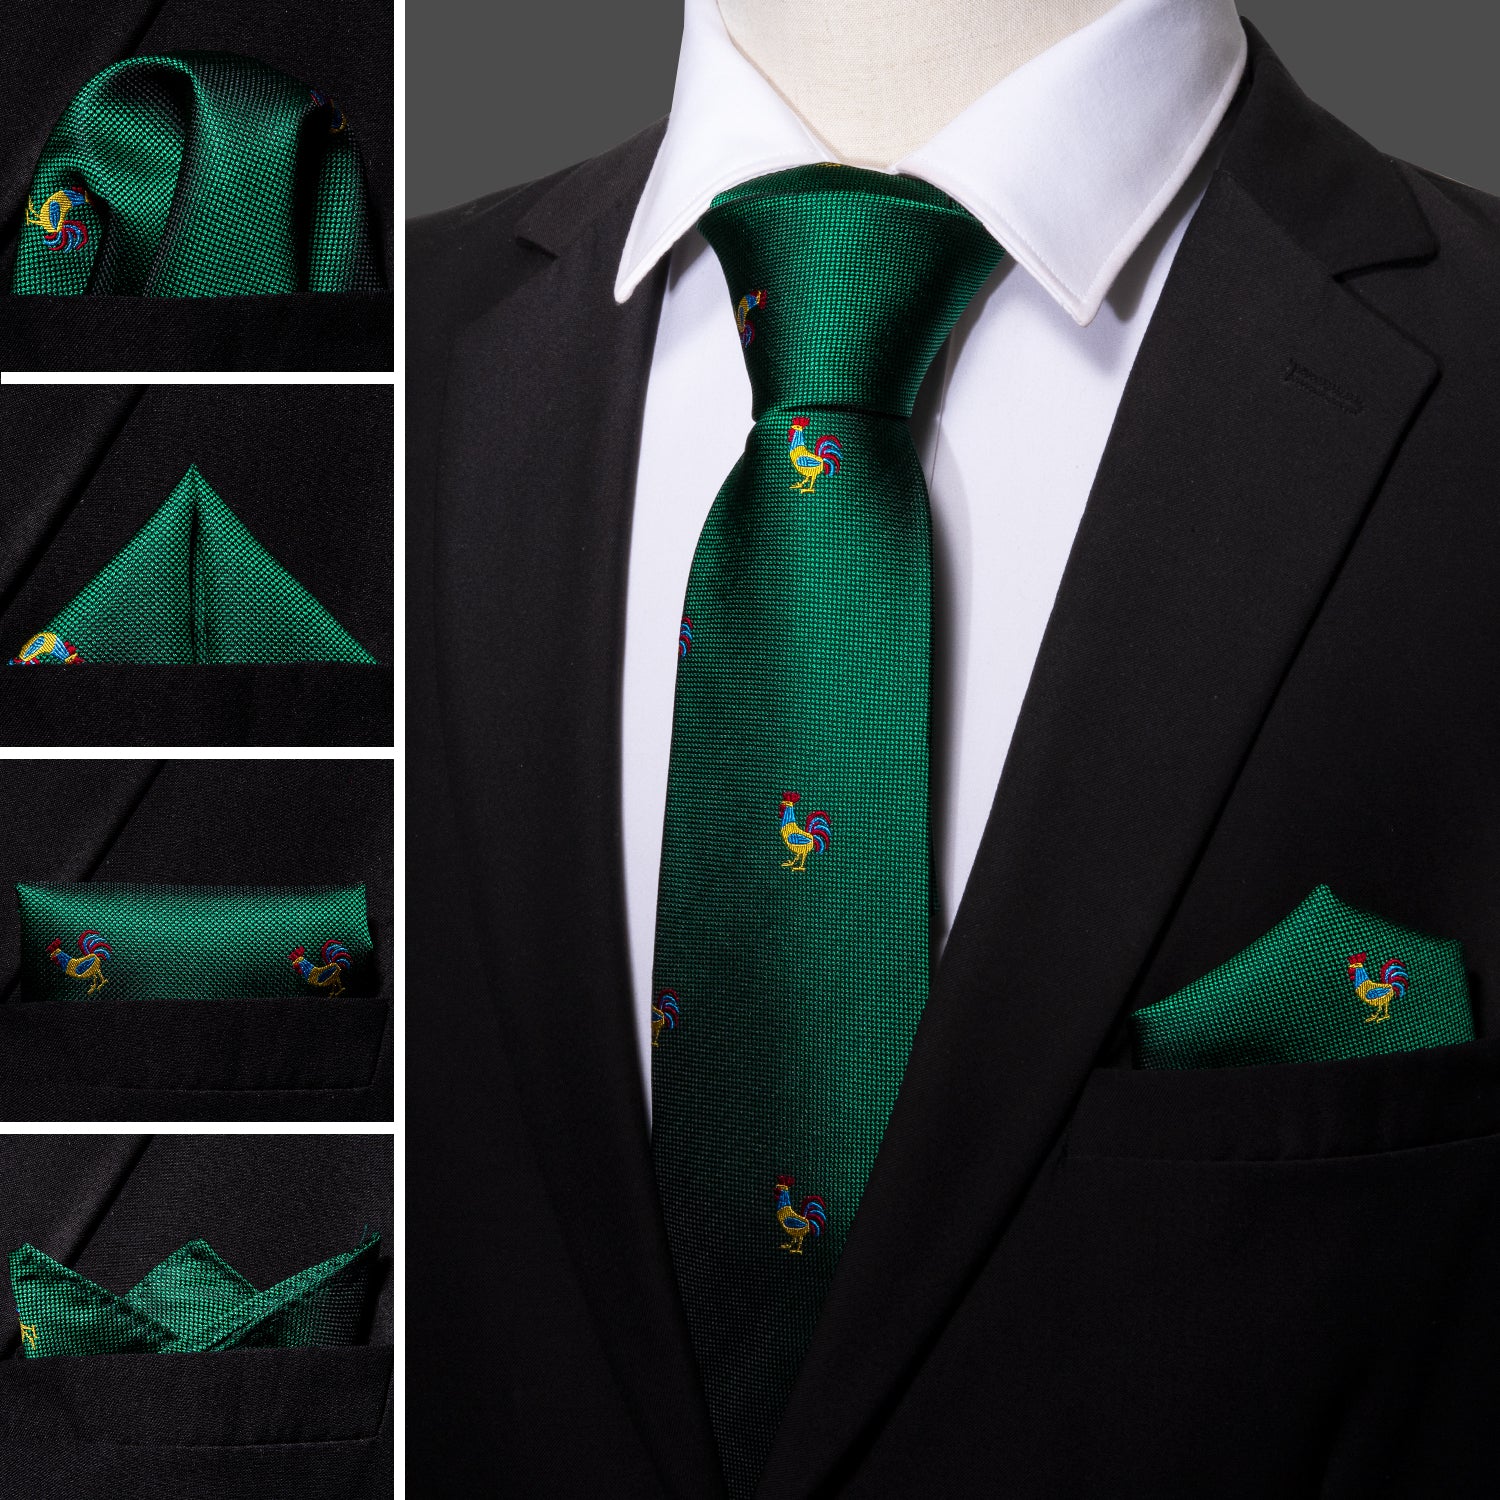 Barry Wang Green Tie Novelty Rooster Pattern Necktie Hanky Cufflinks Set